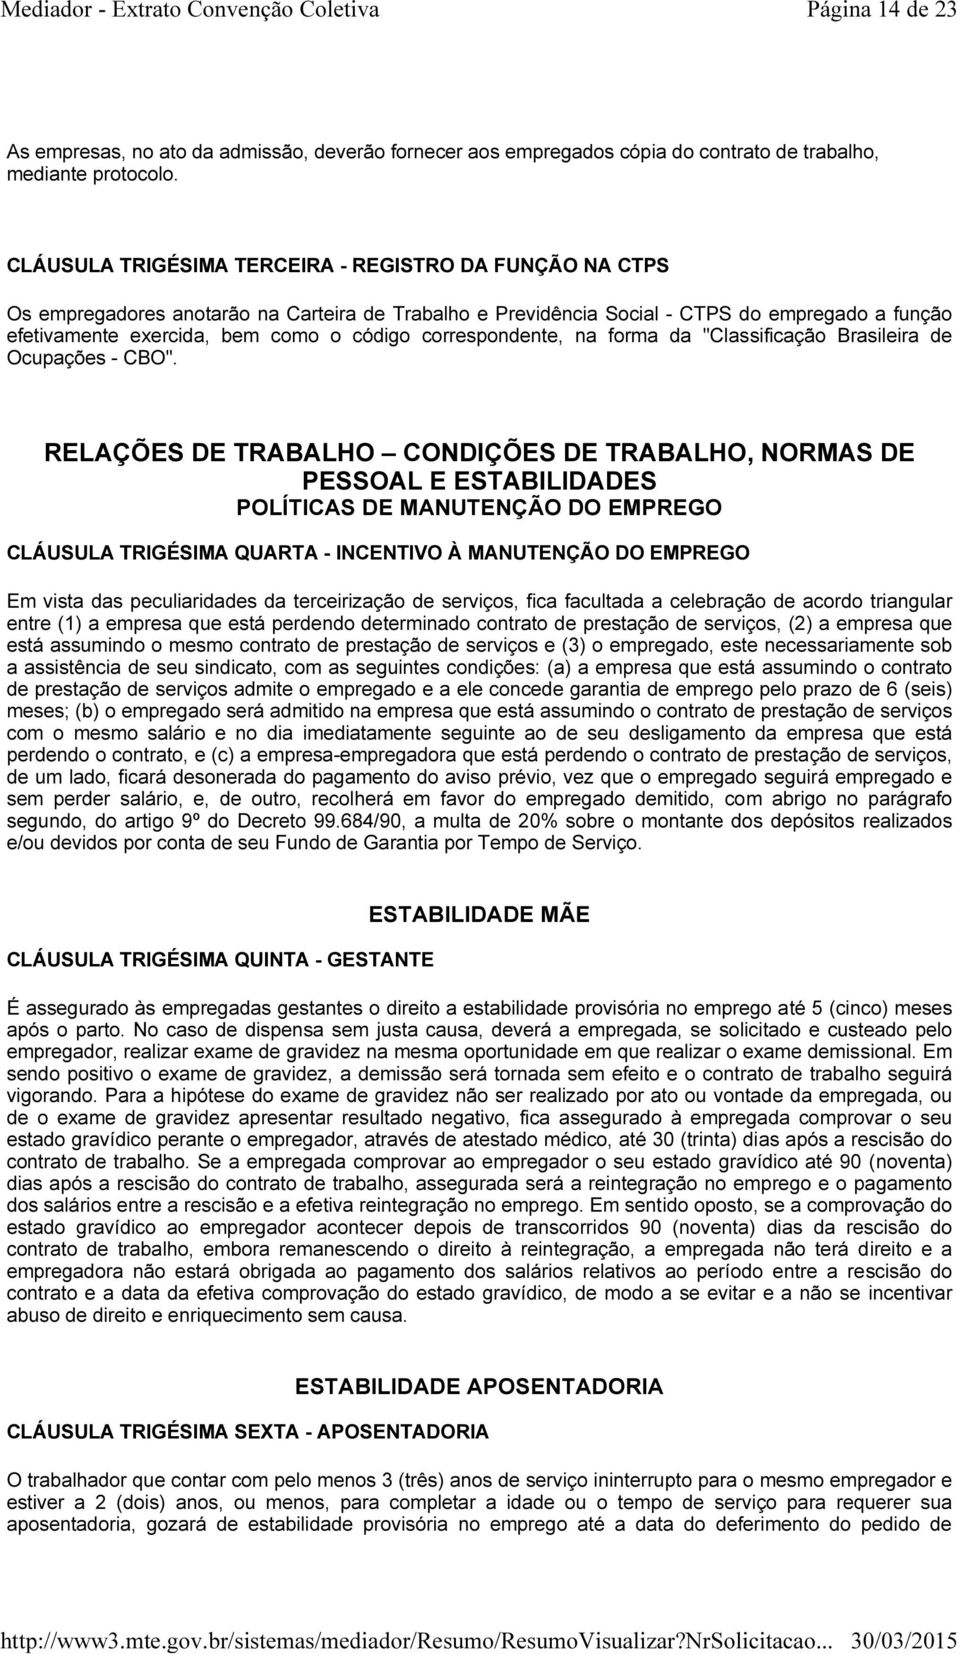 correspondente, na forma da "Classificação Brasileira de Ocupações - CBO".